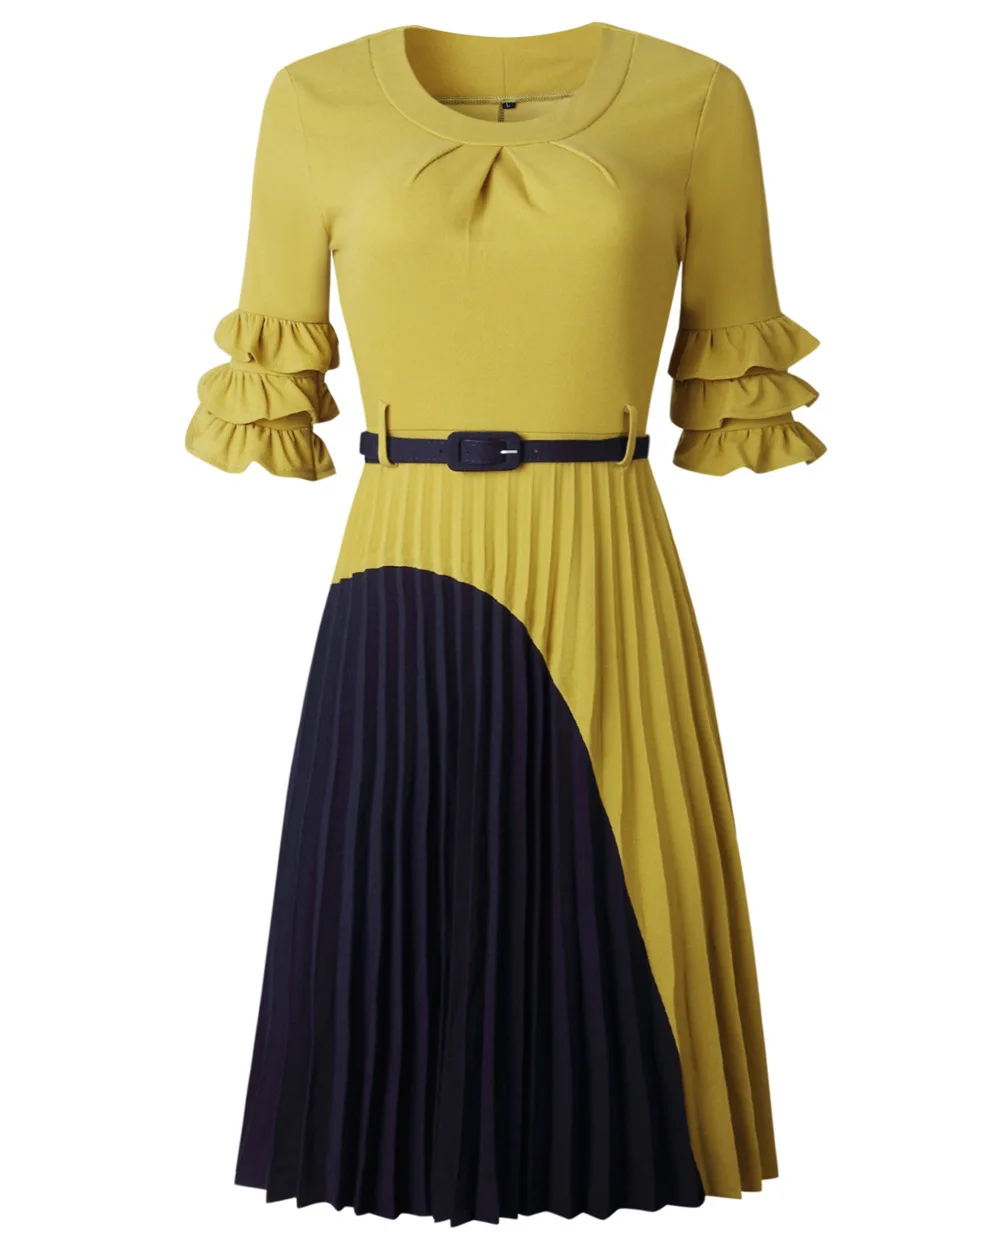 Африканская Дашики платья для женщин винтажное платье-миди платье с рукавом с рюшами африканская лоскутное платье плюс размер плиссированное платье кружева - Цвет: Цвет: желтый